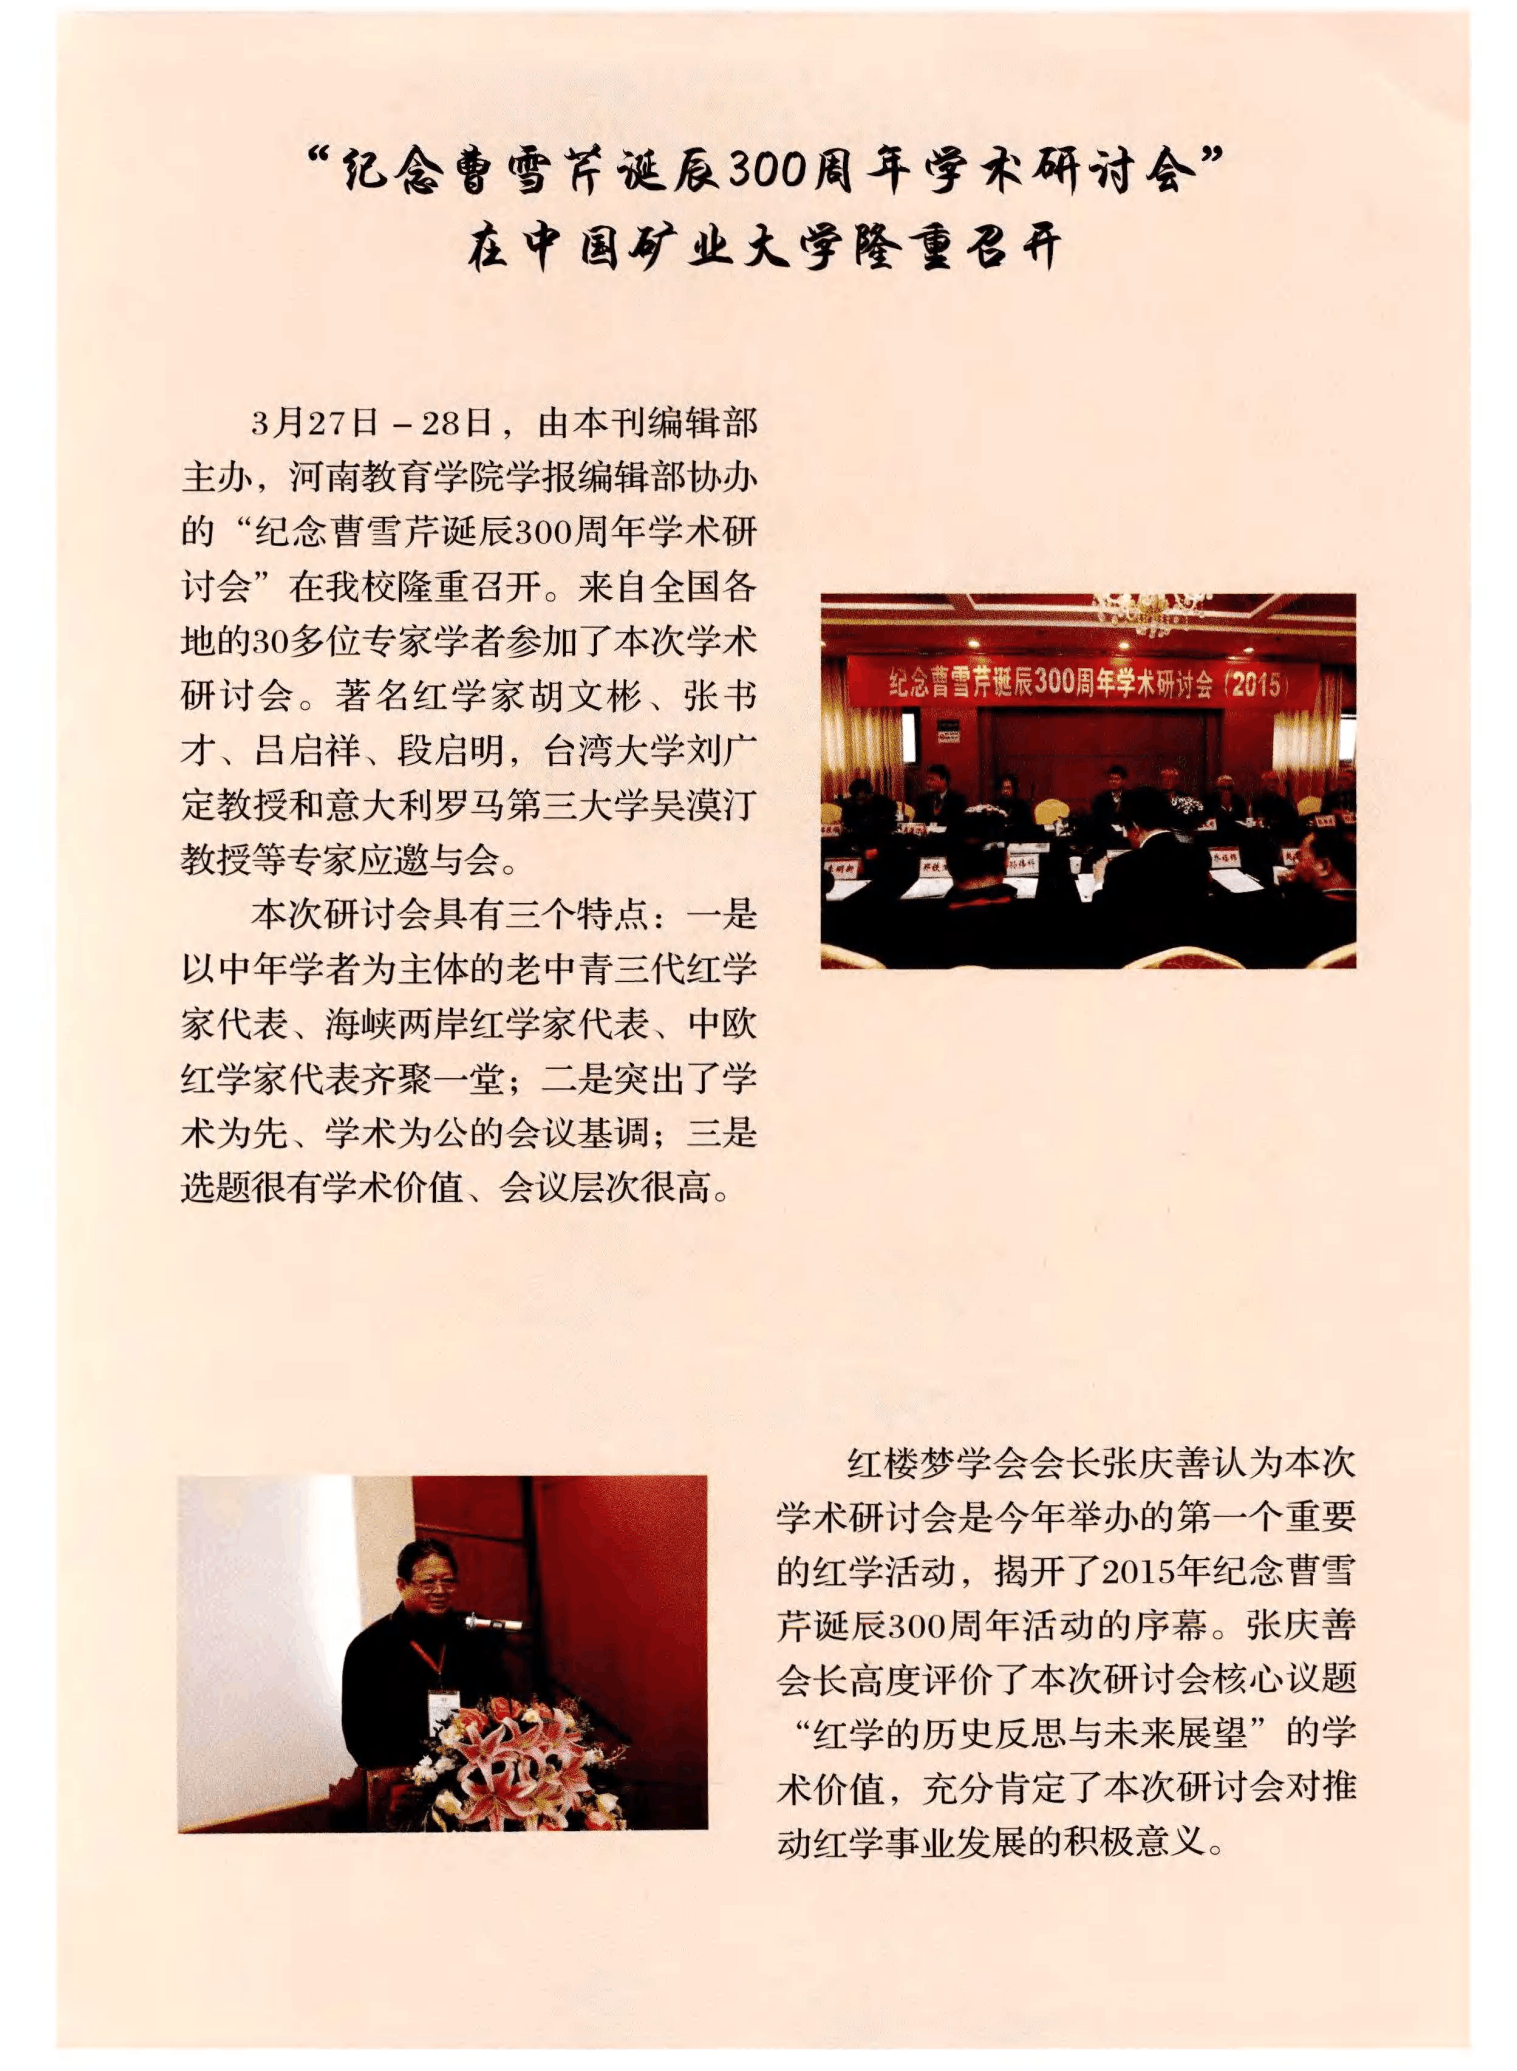 “纪念曹雪芹诞辰300周年学术研讨会”在中国矿业大学隆重召开